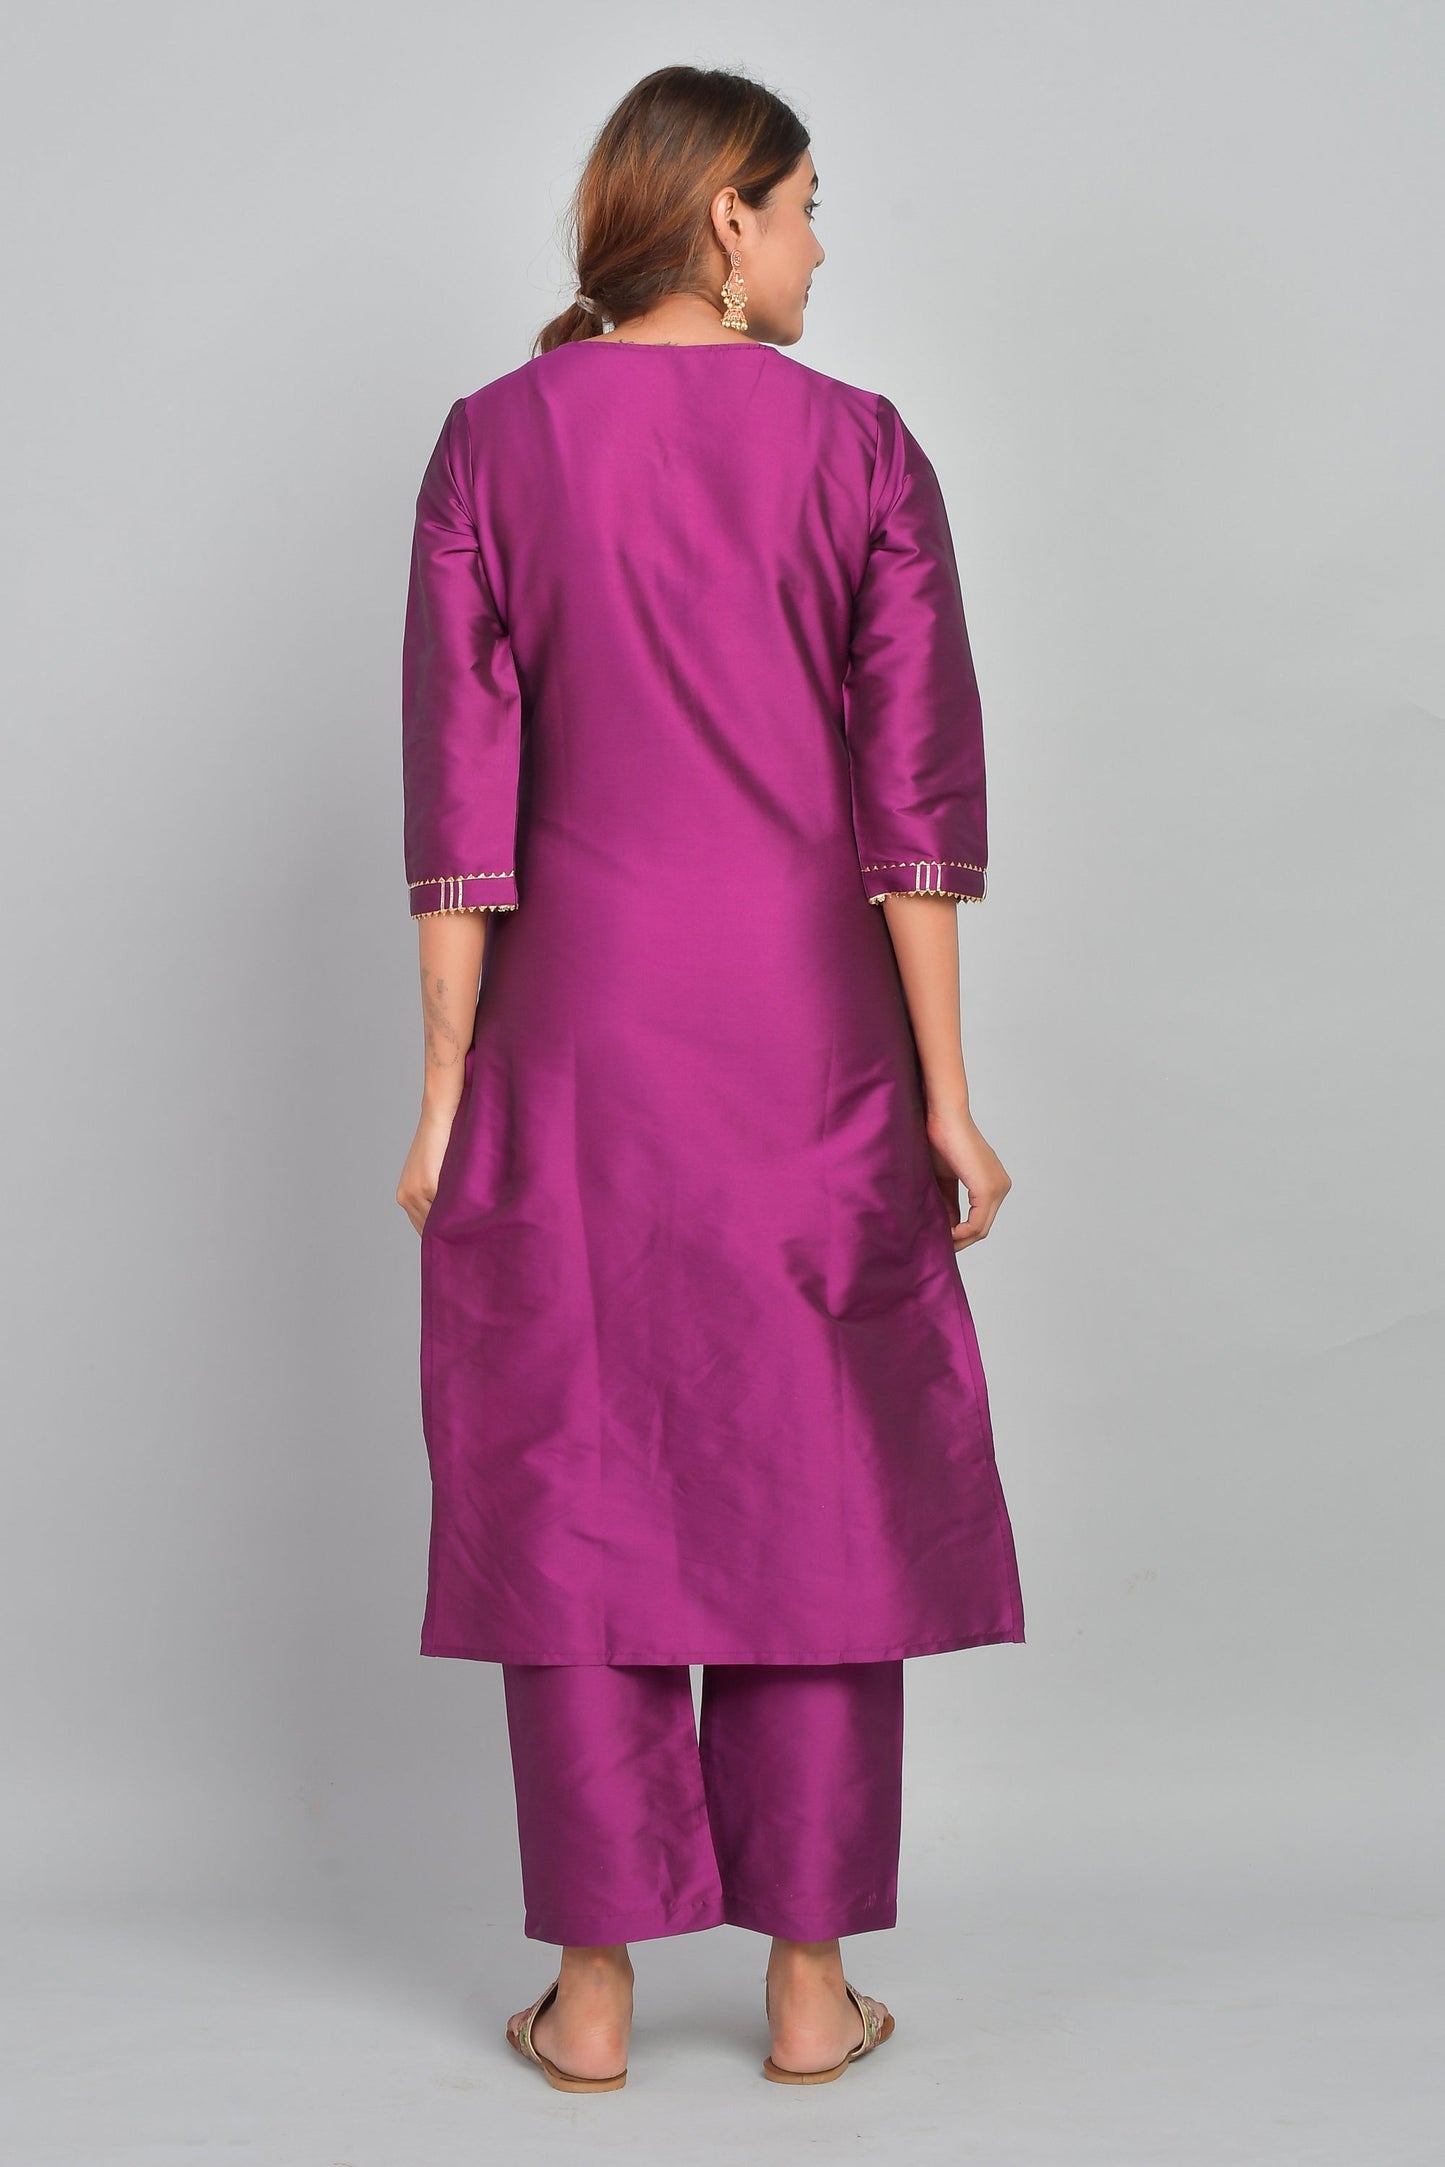 Women's Art Silk Straight Plain Kurta Set - Purple